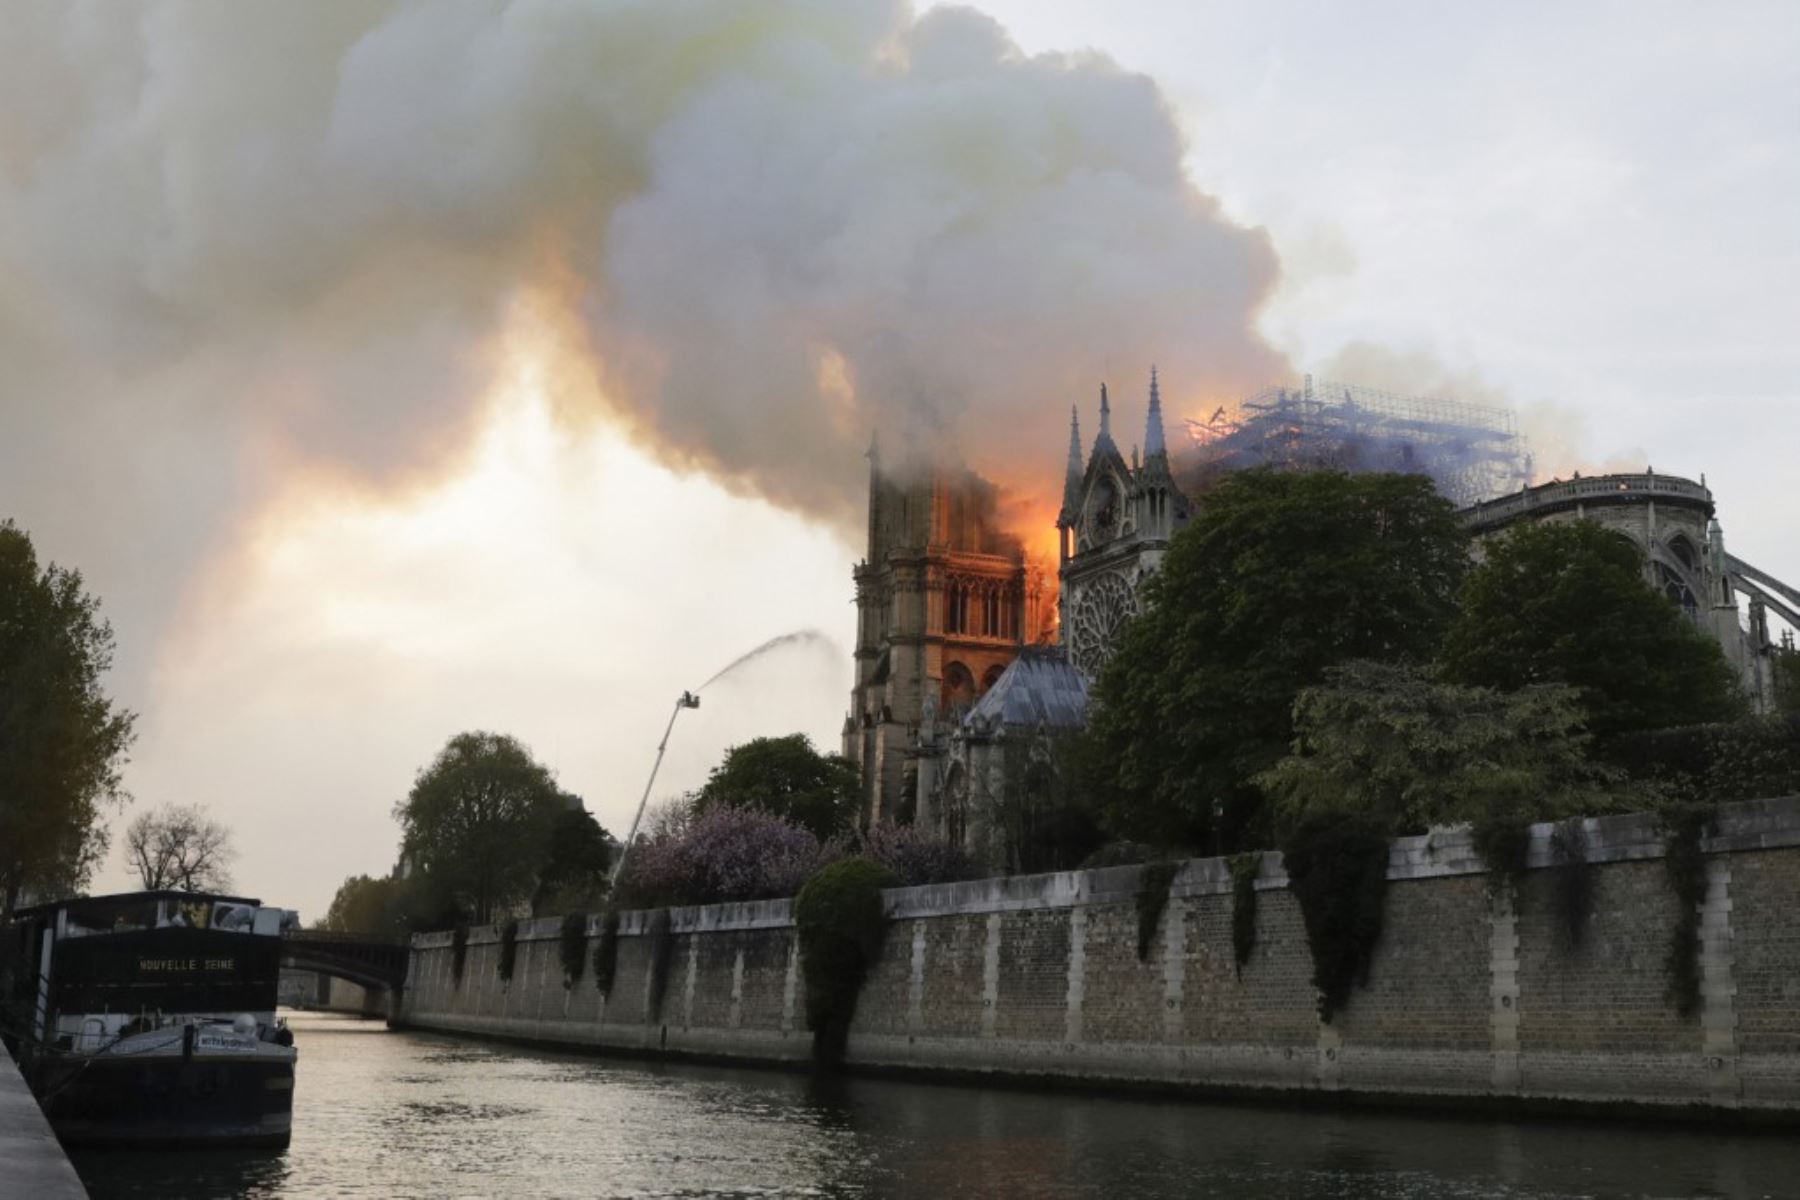 El humo y las llamas se elevan durante un incendio en la histórica catedral de Notre-Dame en el centro de París.

Foto: AFP